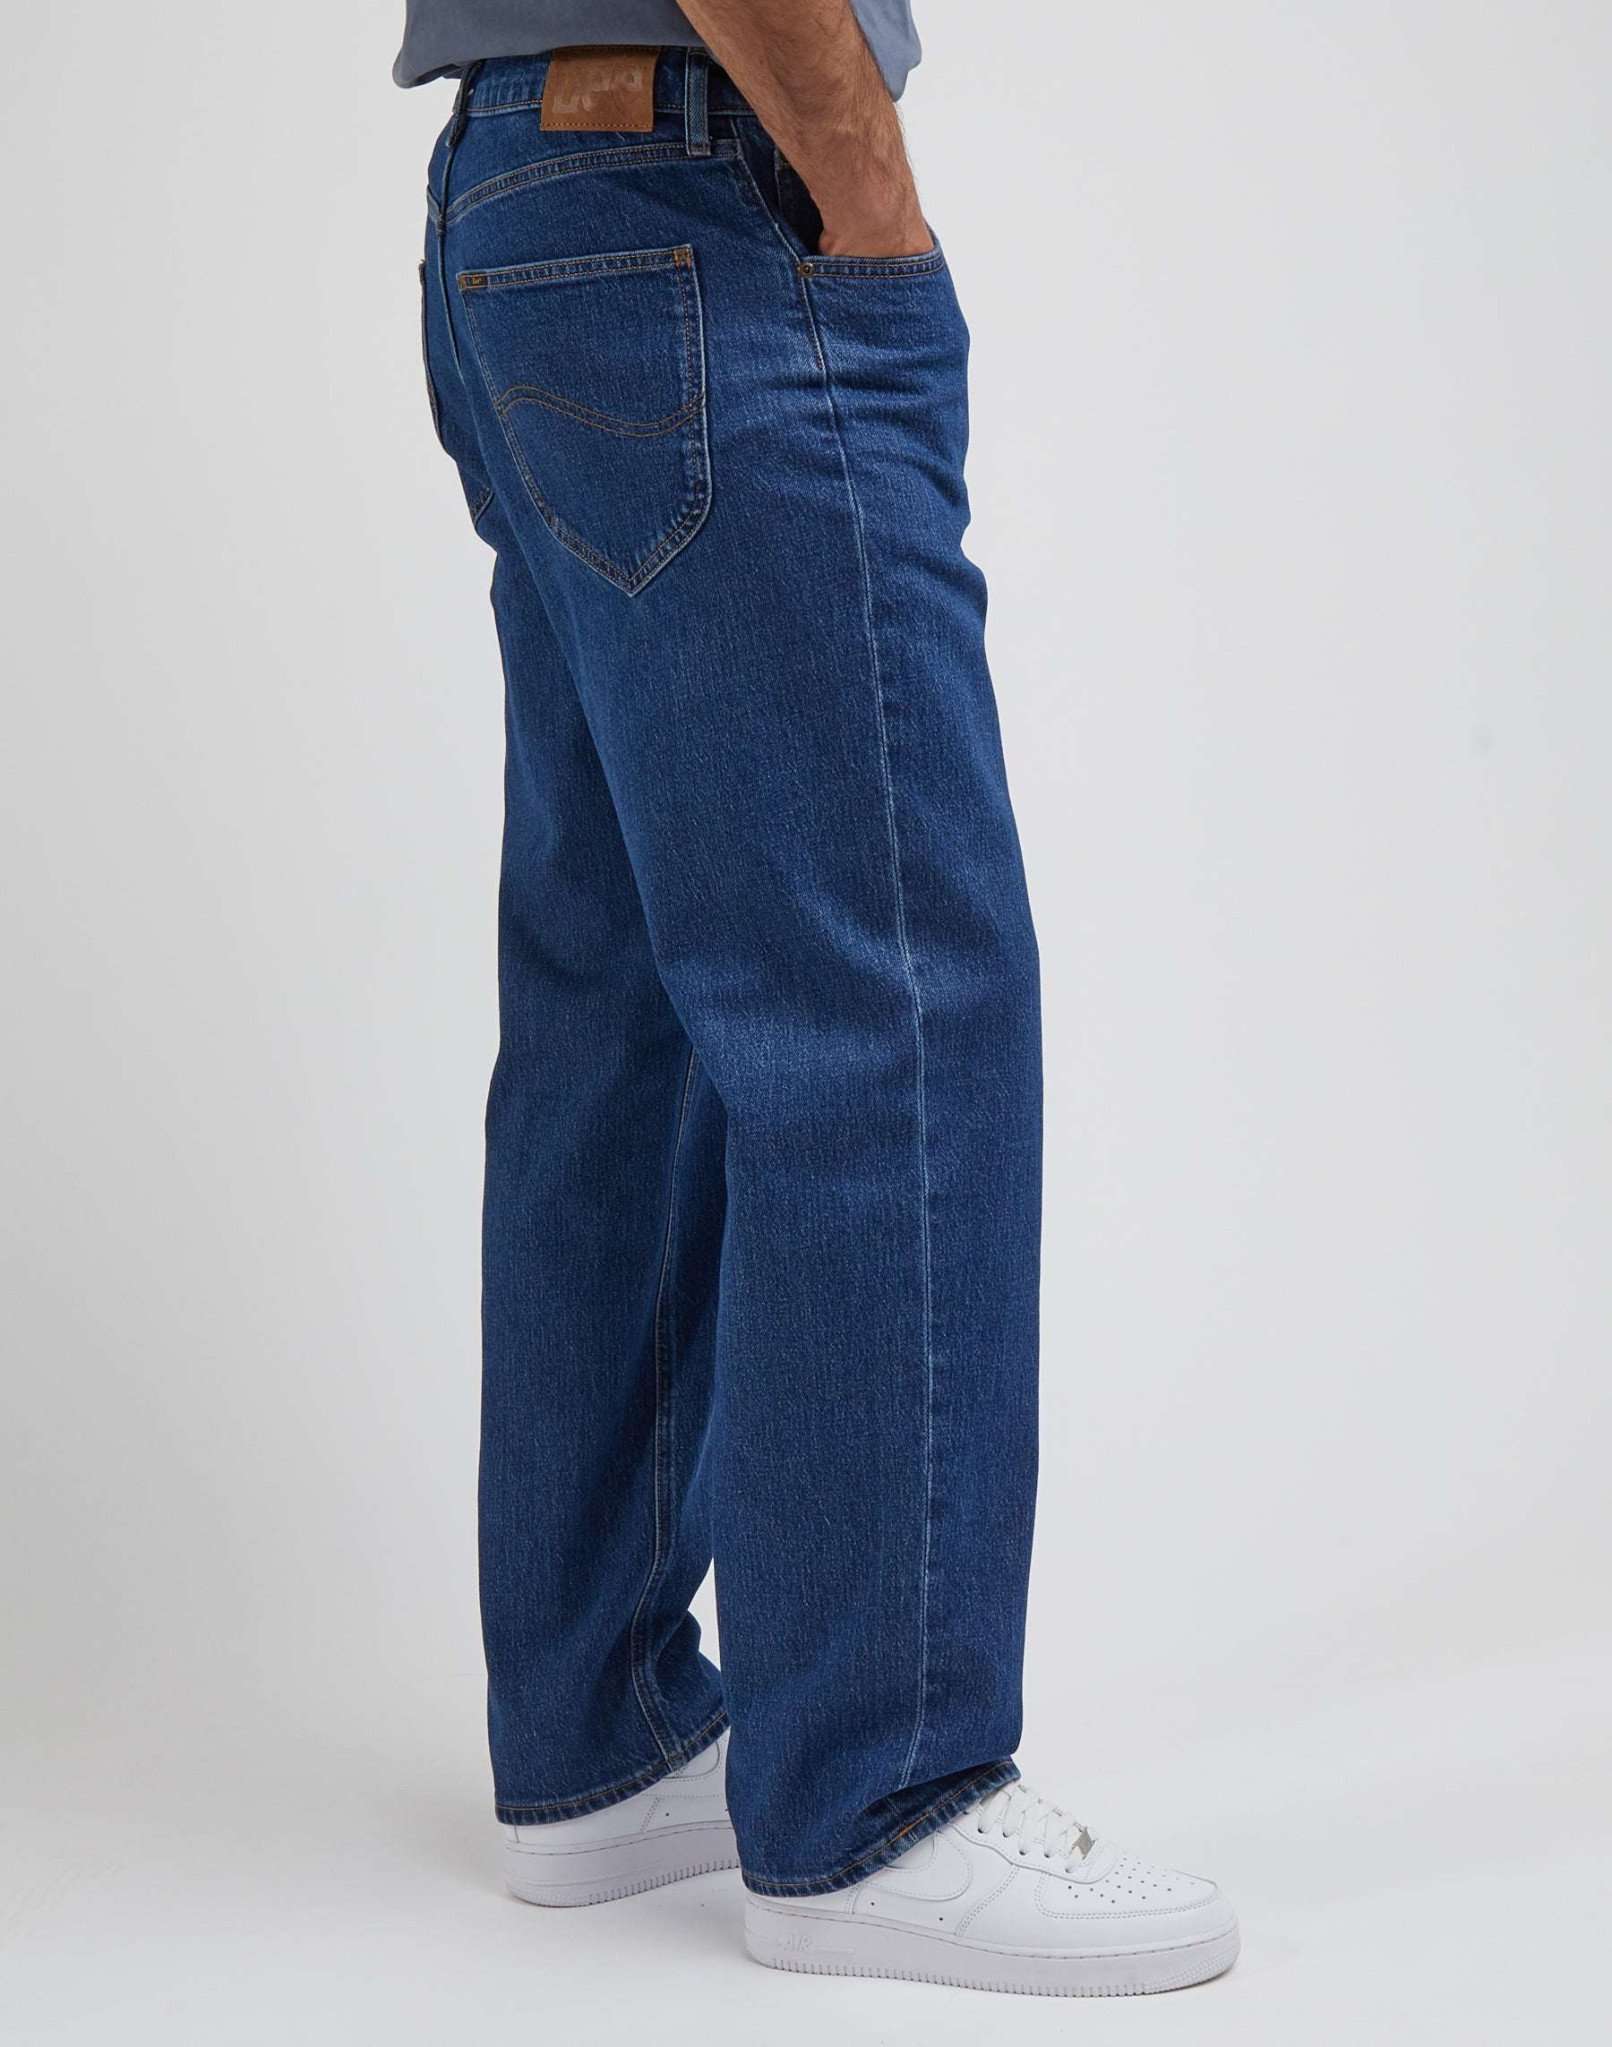 Asher in Vintage Jamie Jeans Lee   